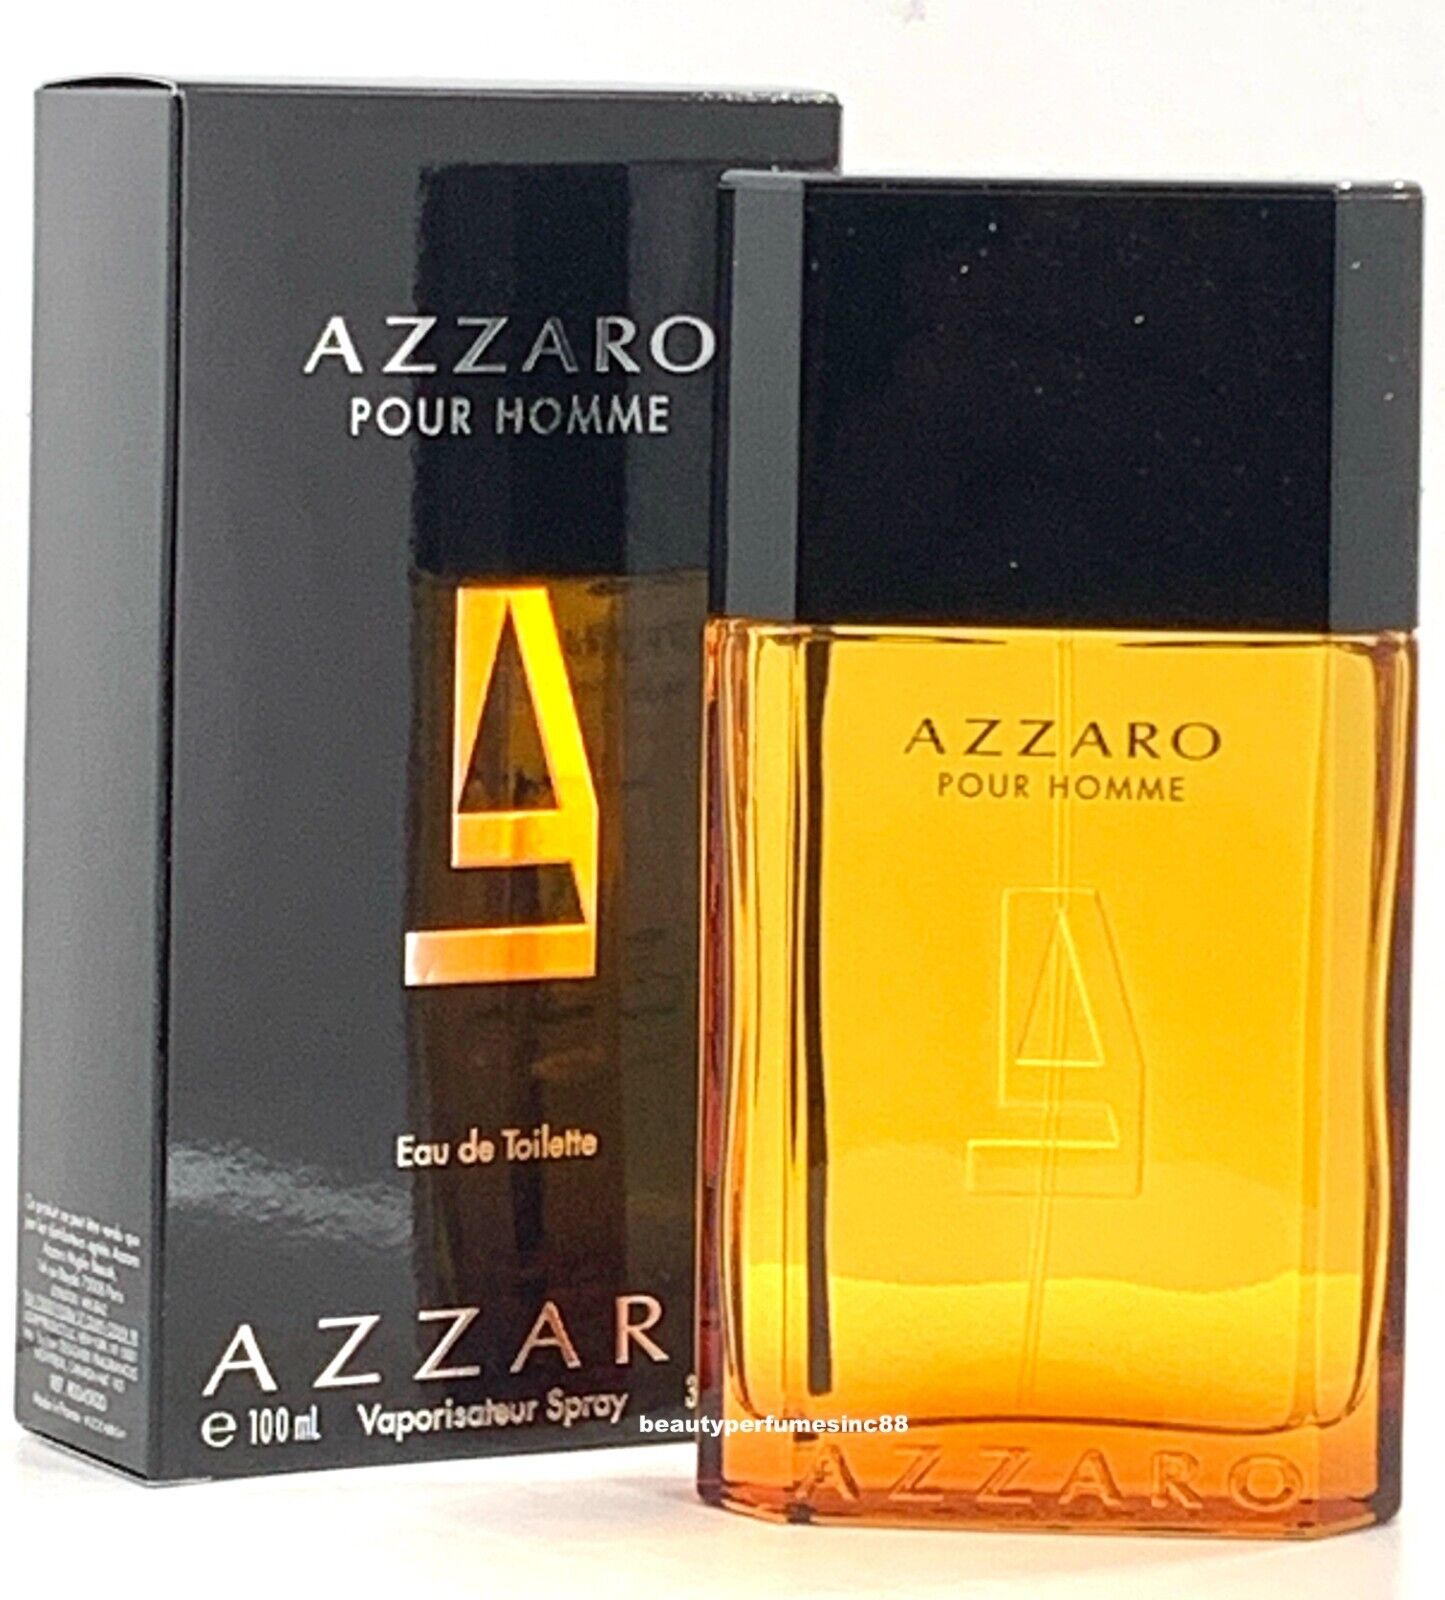 Azzaro Pour Homme 3.4 oz Eau de Toilette Spray, Perfume for Men New in Box Azzaro AZZ1881 - фотография #2